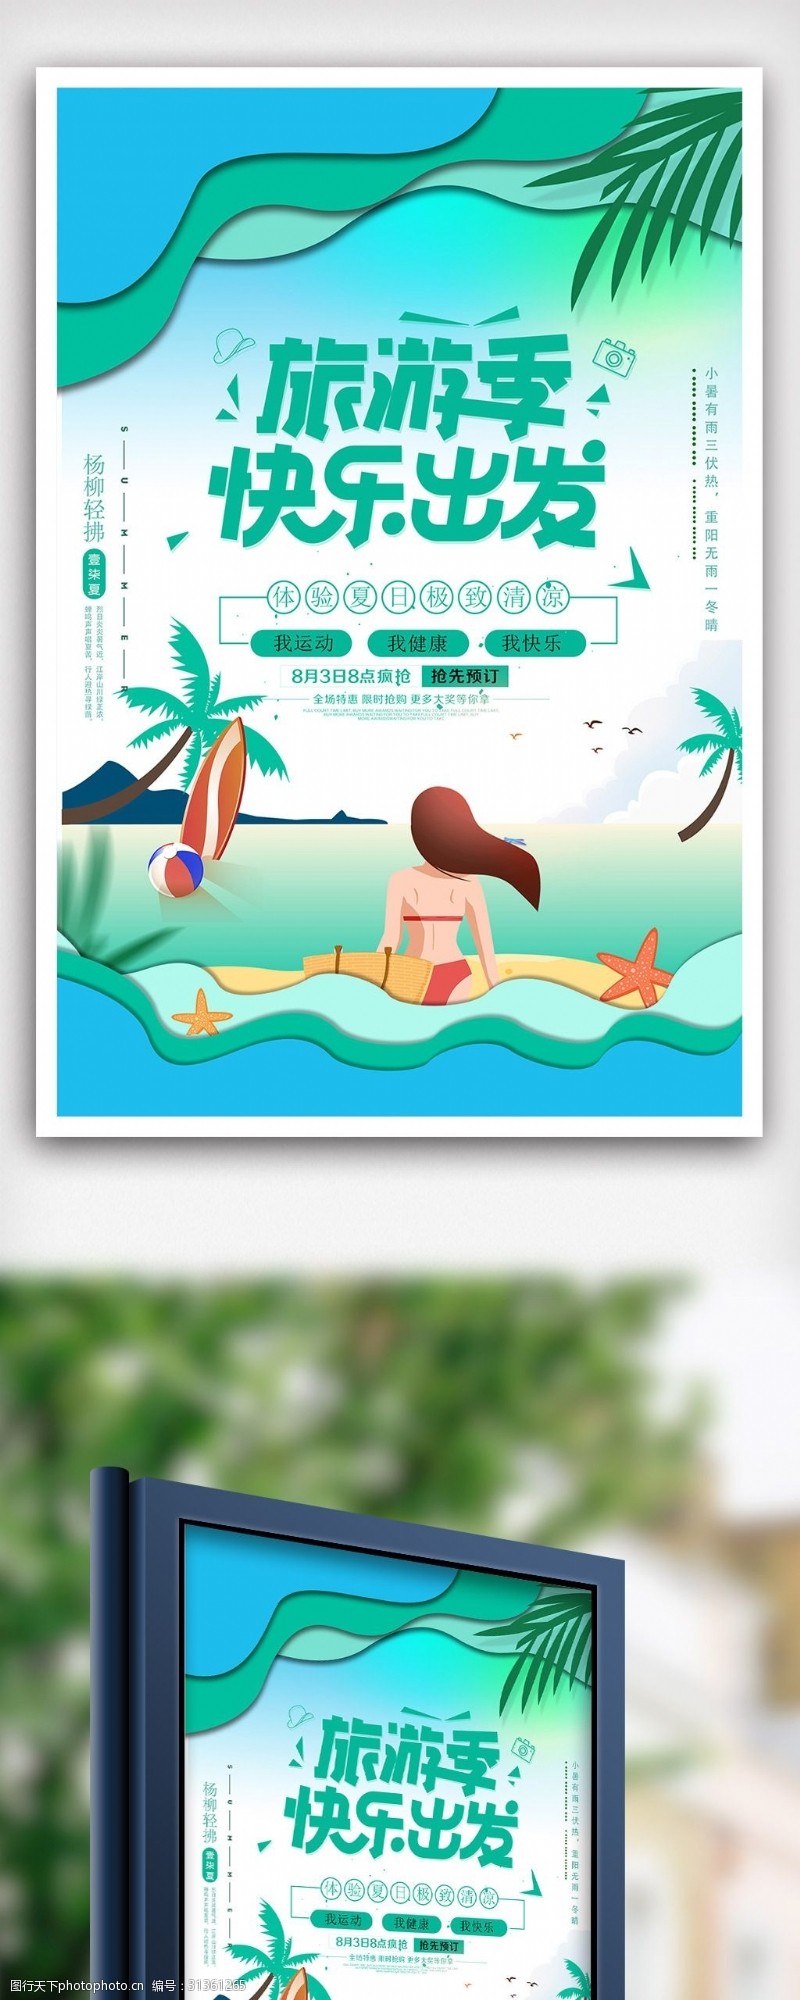 小学生夏令营简洁大气夏季旅游海报设计